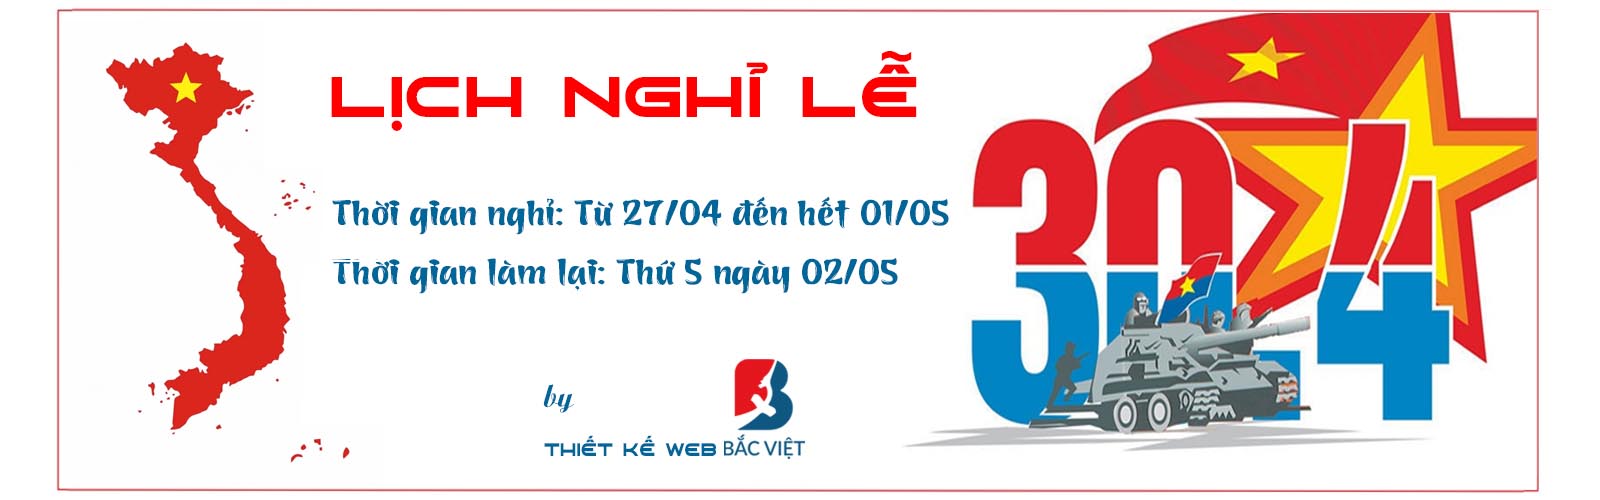 Thông báo Lịch nghỉ lễ 30/04 & 01/05 năm 2019 của Bắc Việt